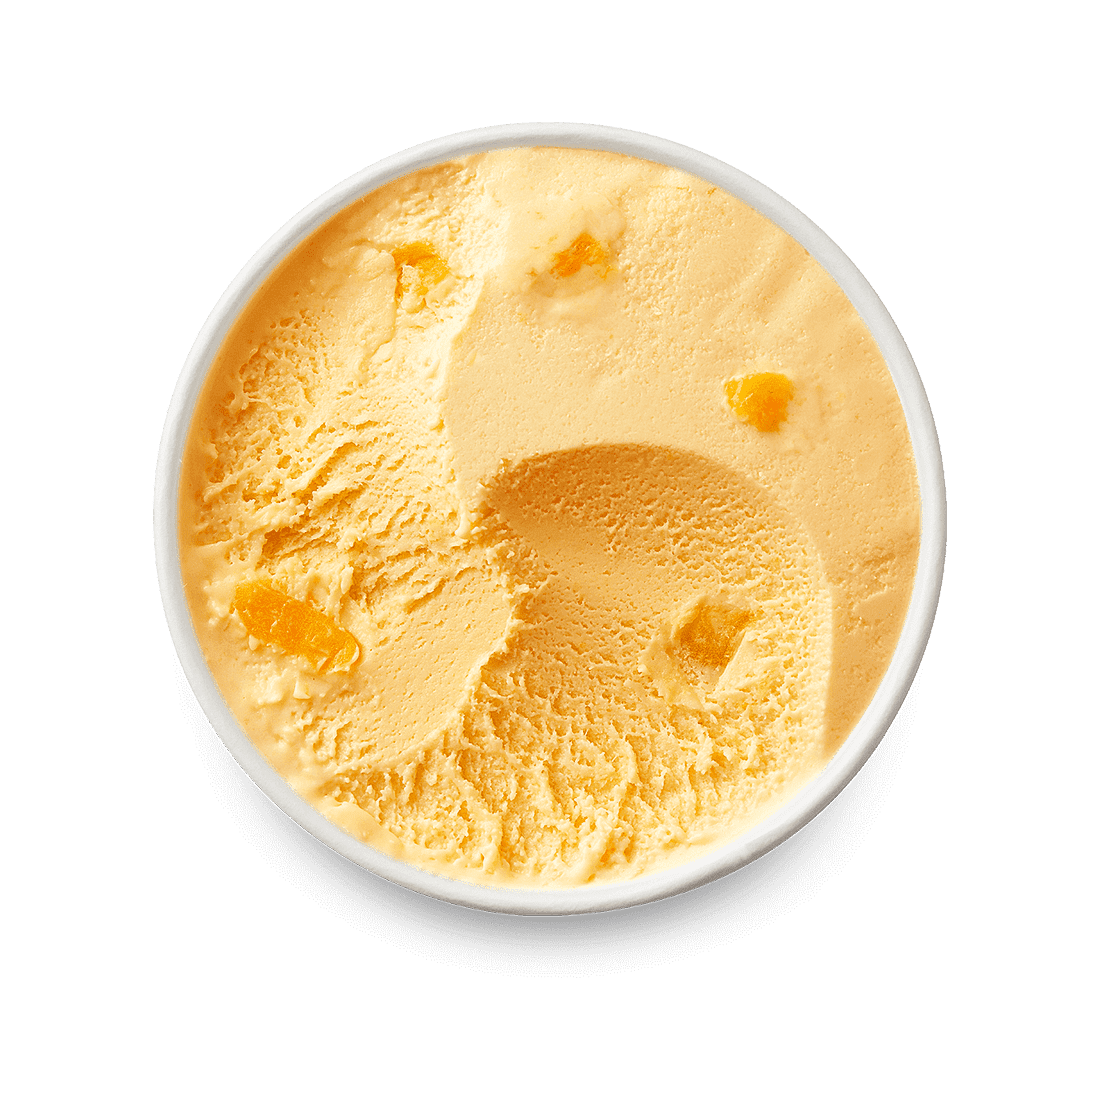 【食譜】芒果優格冰淇淋。2種食材製作簡單版酸甜芒果優格冰 @J&A的旅行